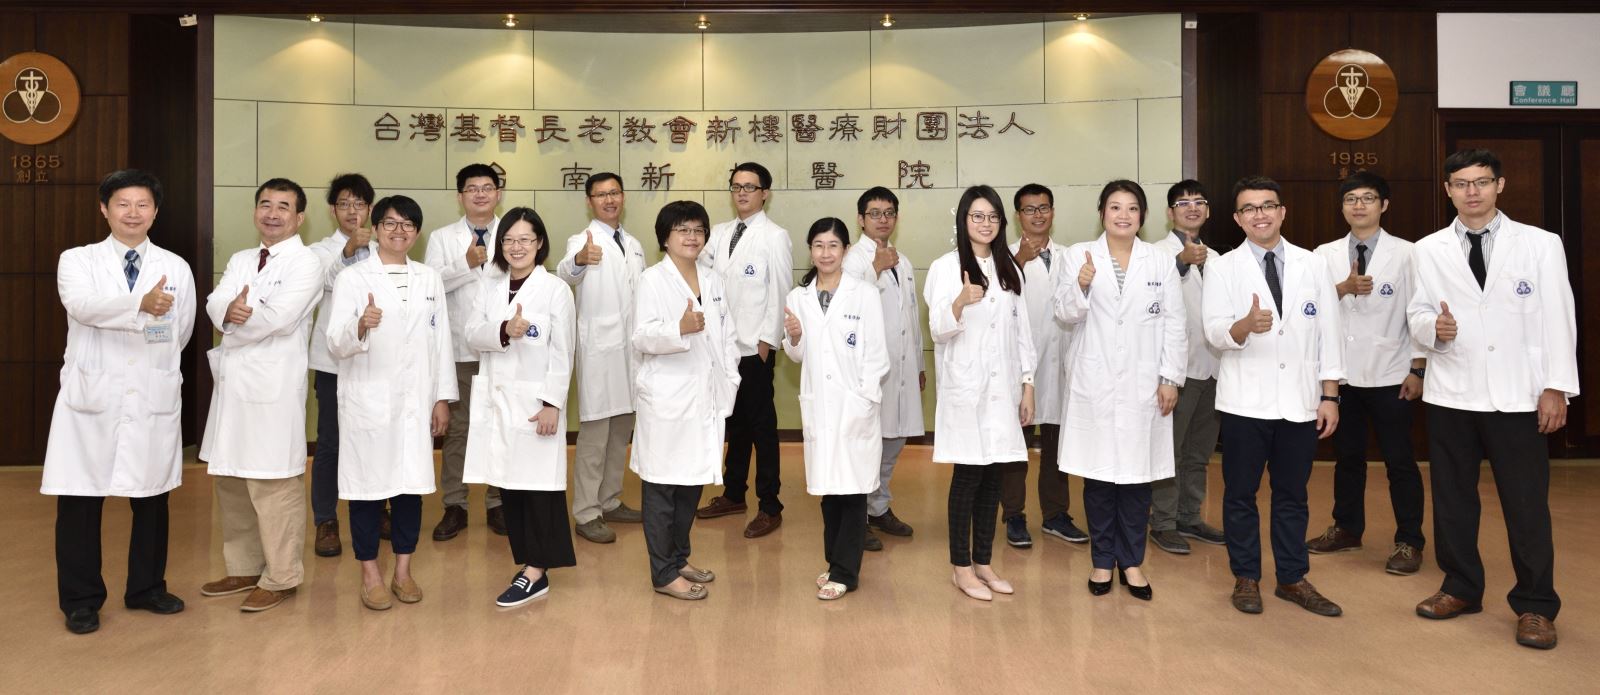 台南新樓醫院牙醫科醫師團隊照片